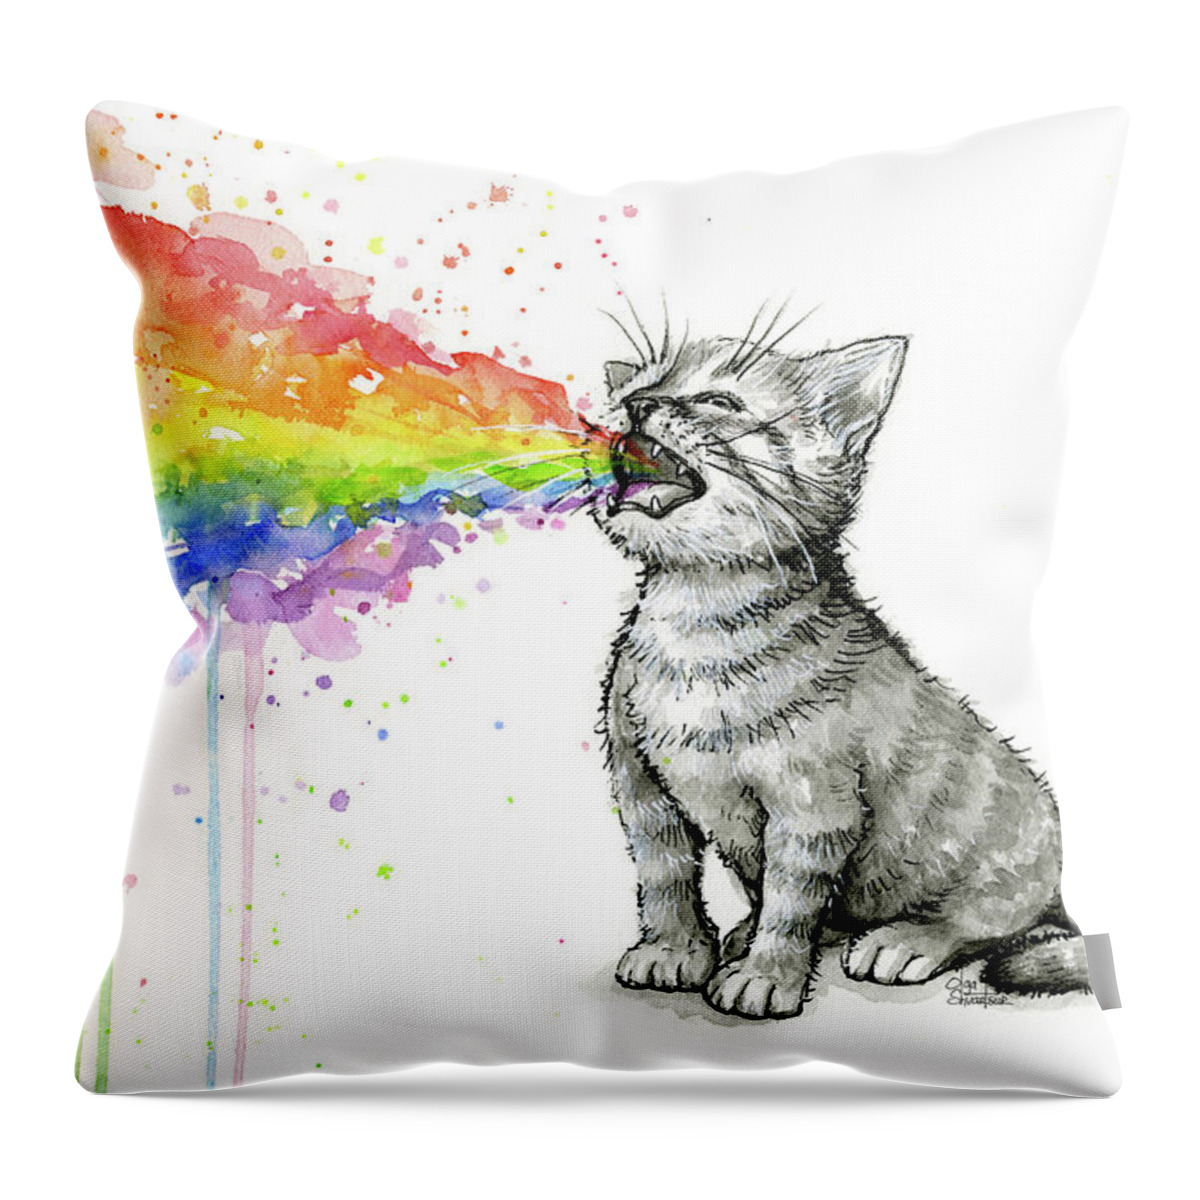 Kitten Throw Pillow featuring the painting Kitten Tastes the Rainbow by Olga Shvartsur